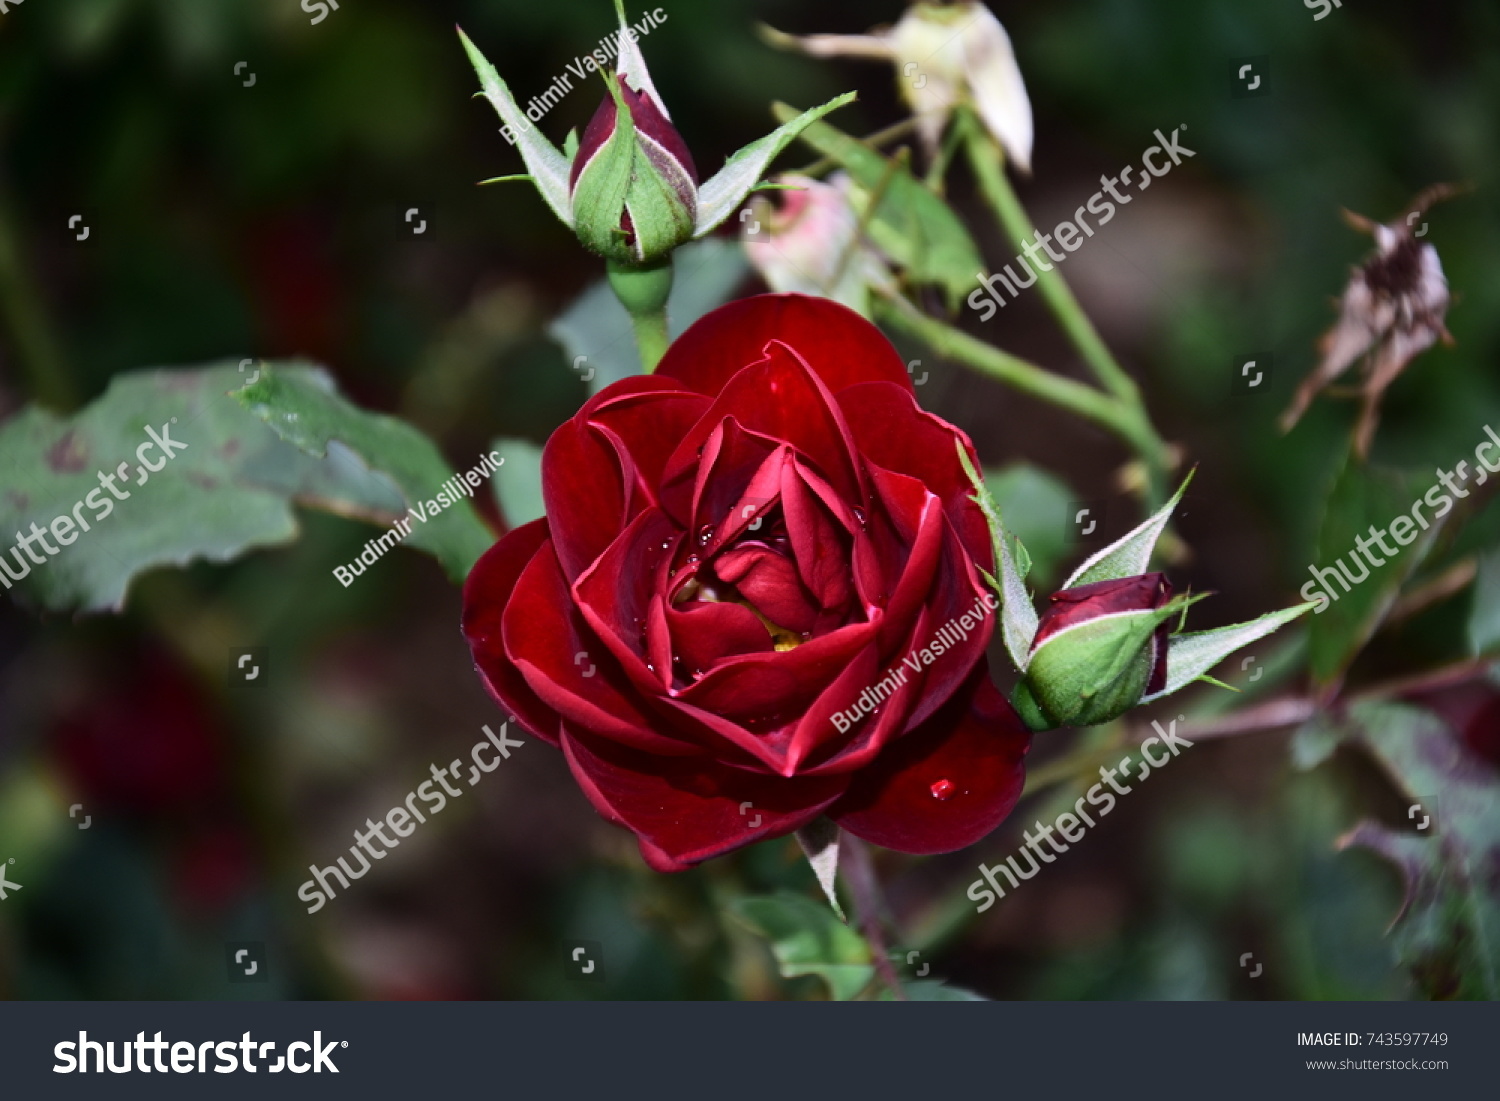 Rose My Garden V Stock Photo 743597749 | Shutterstock